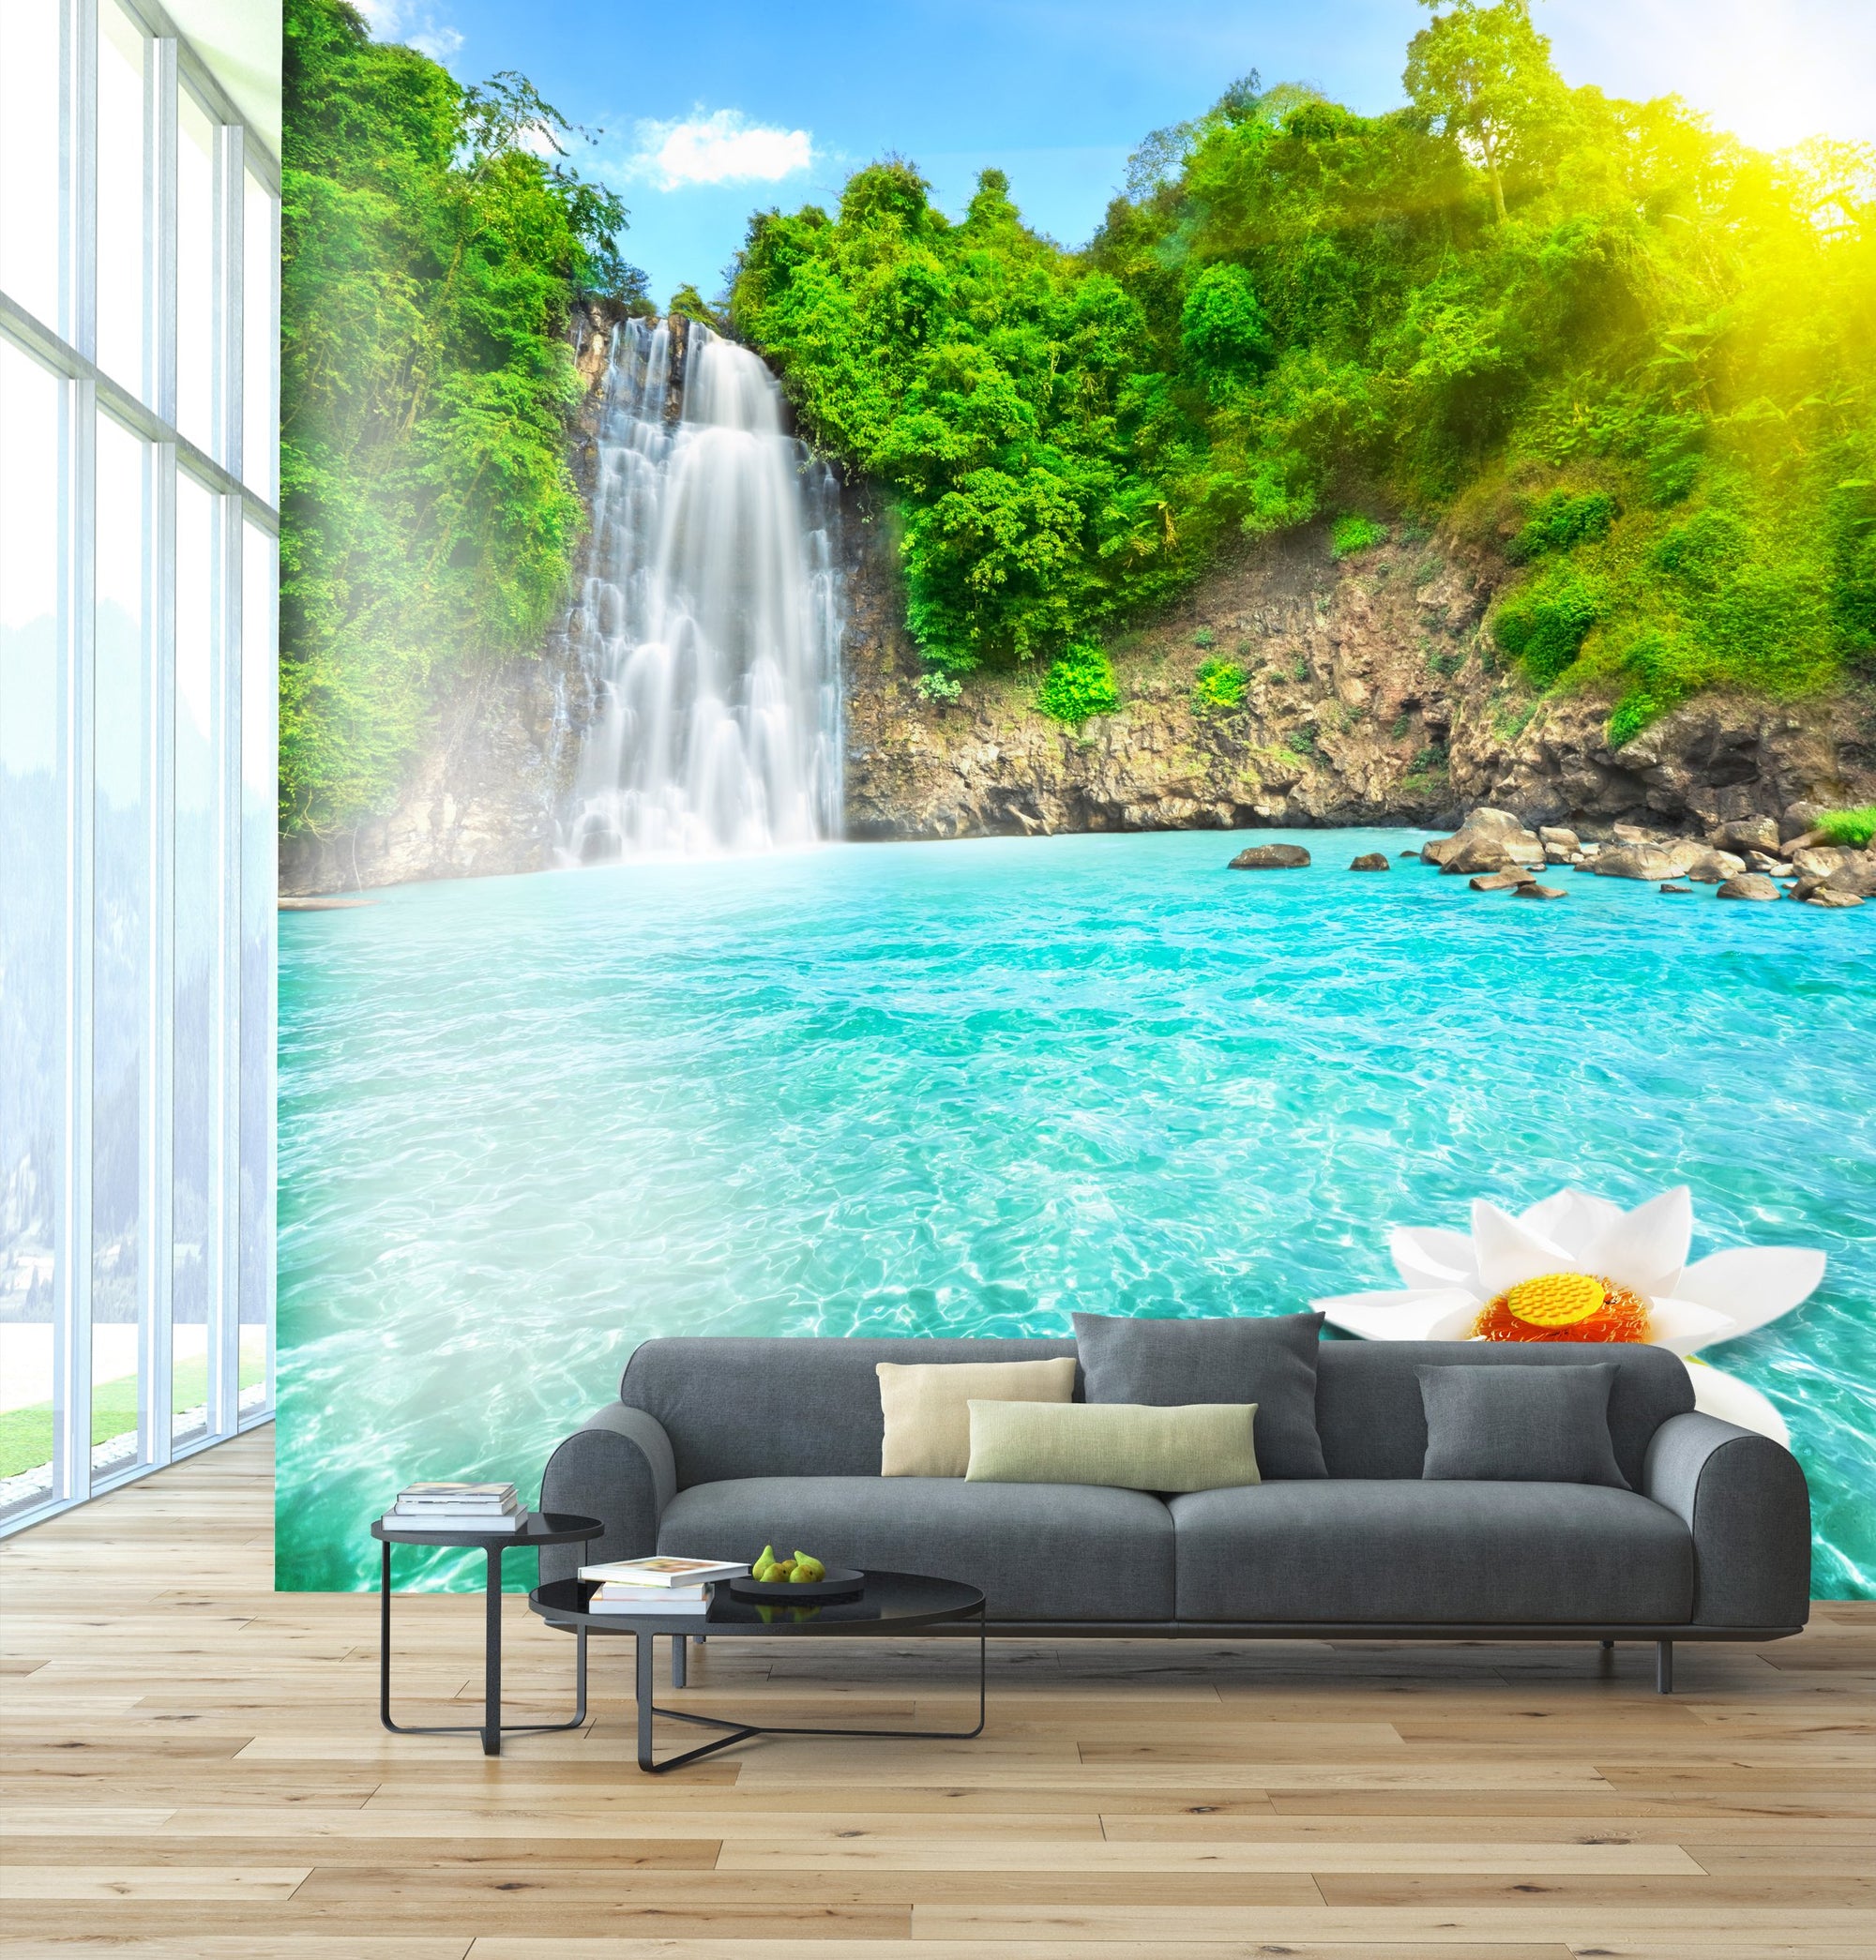 Möbel aus selbstklebendem Vinyl Möbel Wasserfall - Life-decor